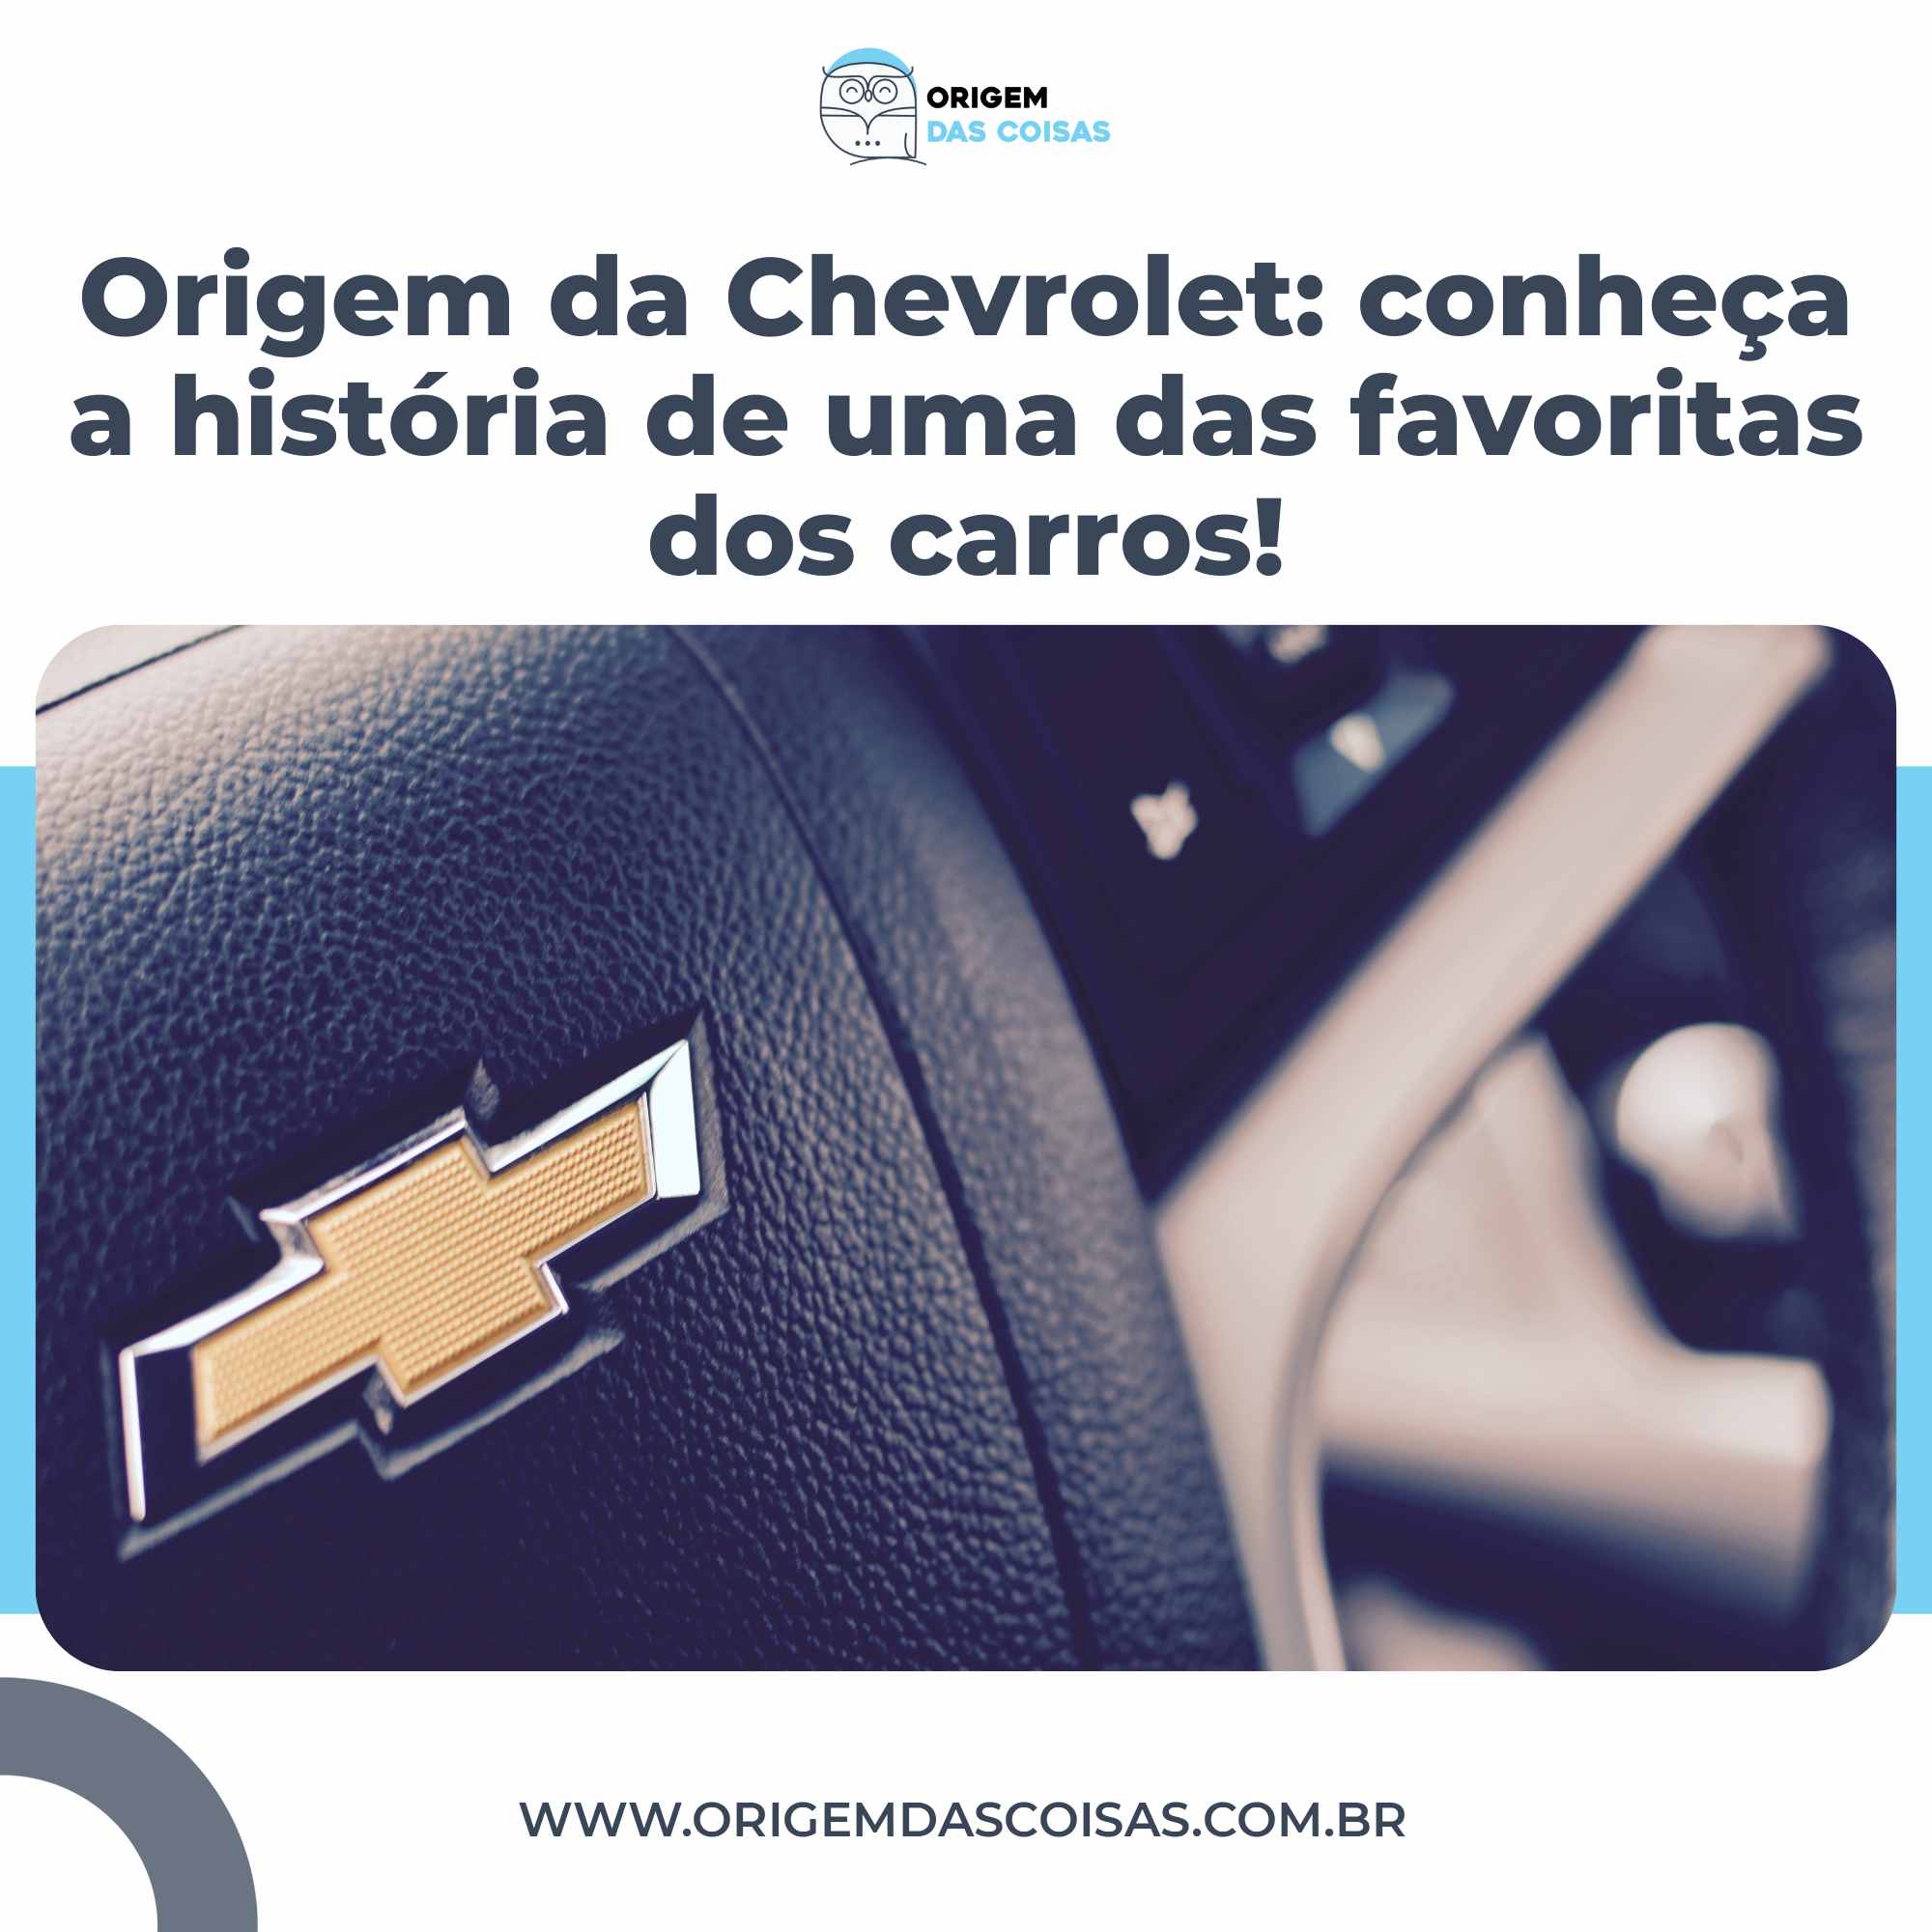 Origem da Chevrolet conheça a história de uma das favoritas dos carros!